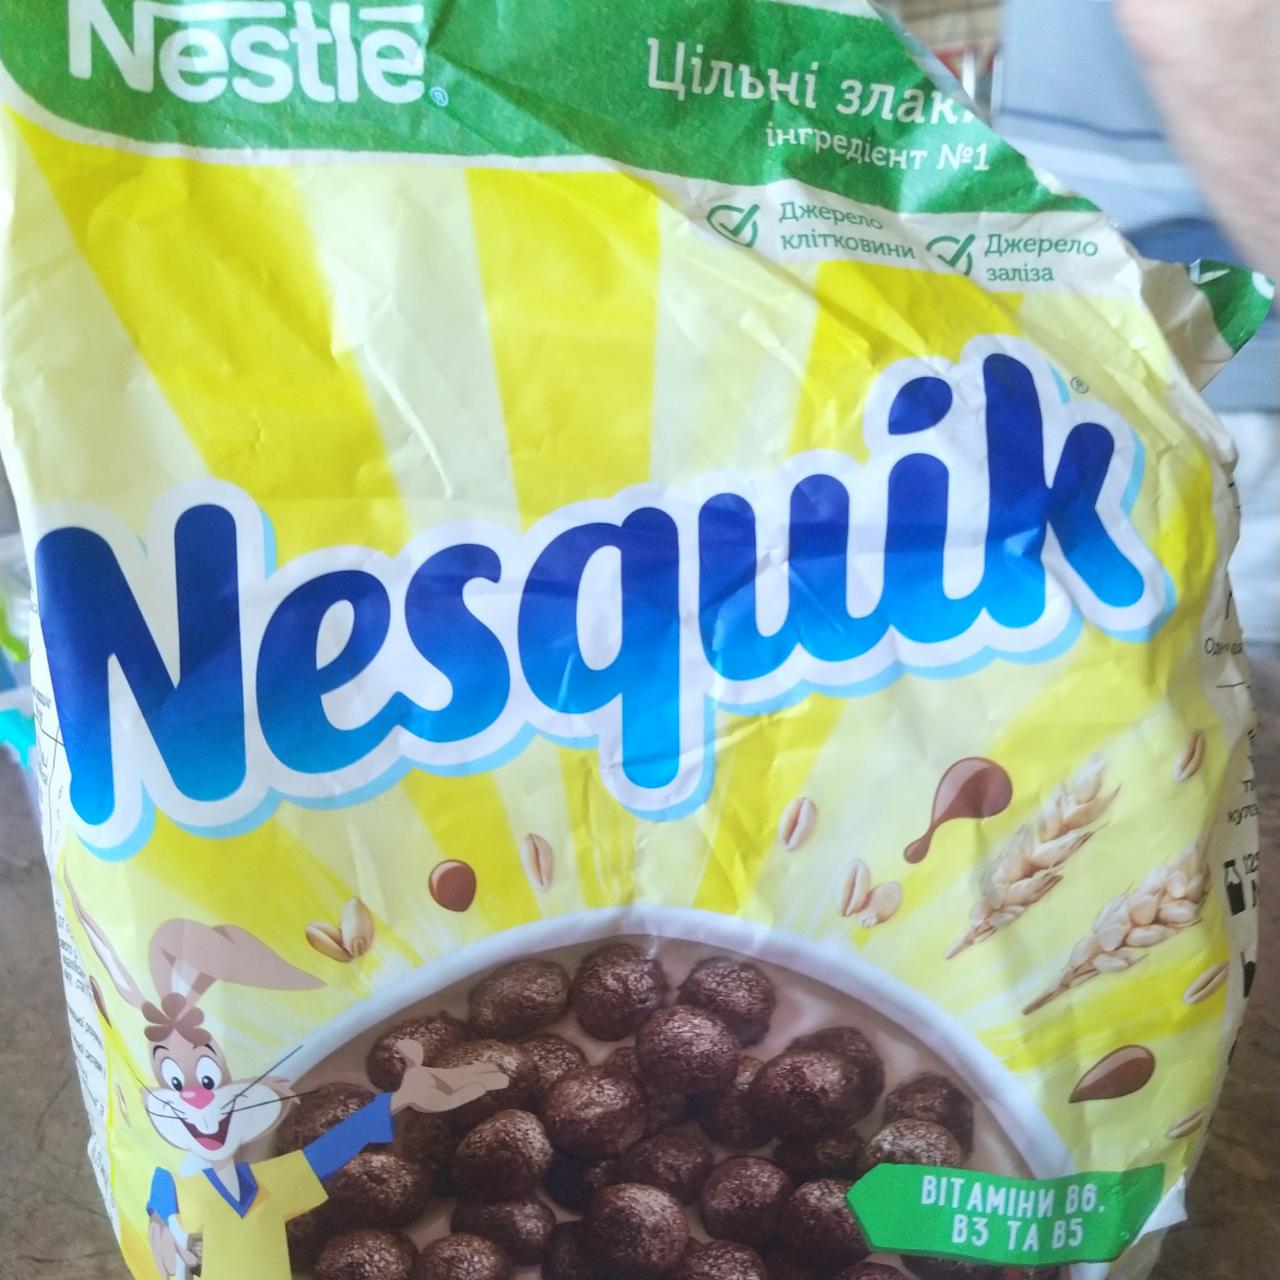 Фото - Готовий сухий сніданок з цільними злаками та вітамінами групи B Nesquik Nestle